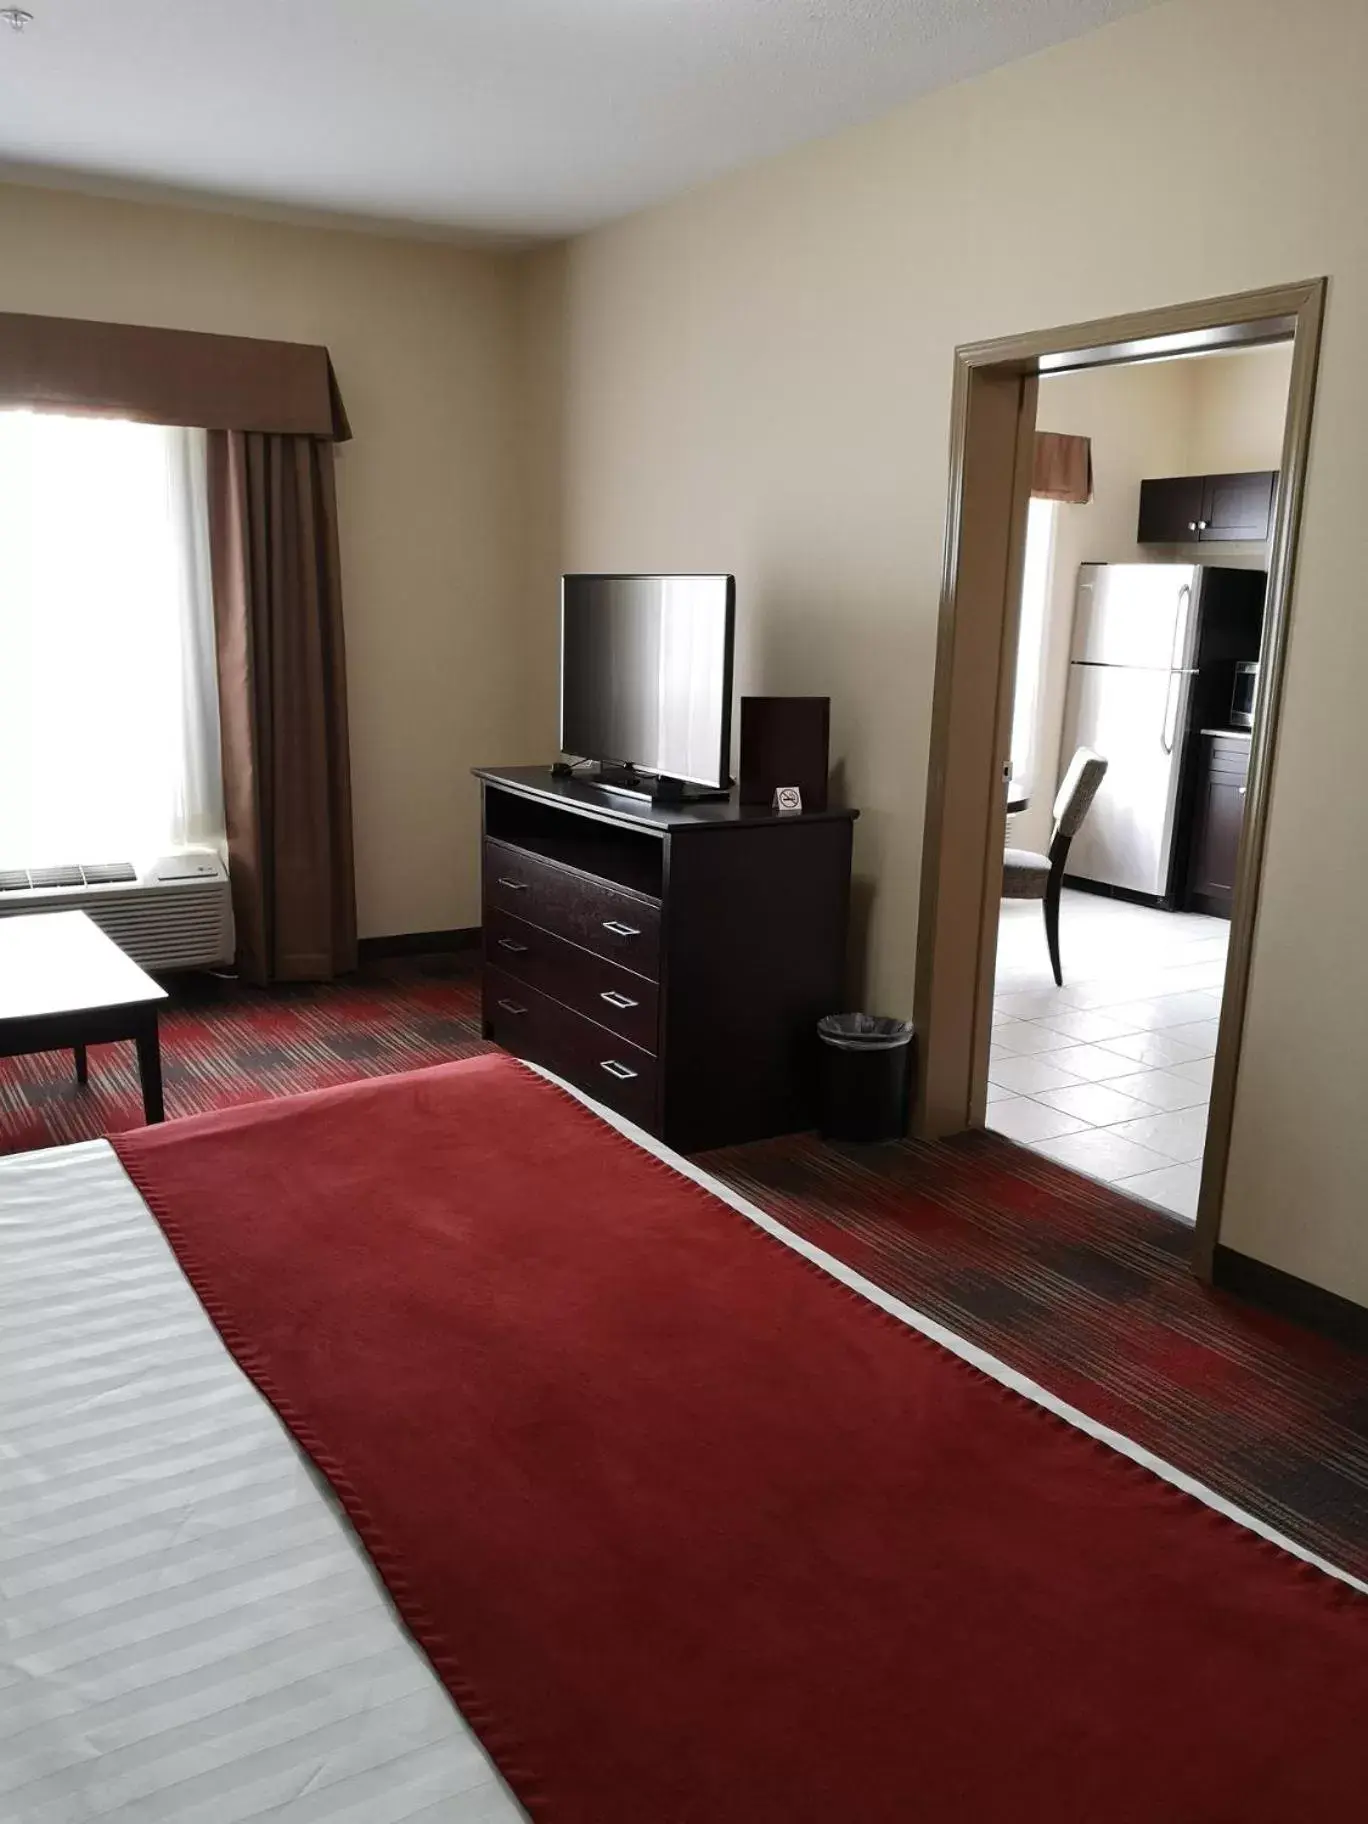 Bedroom, TV/Entertainment Center in Best Western Plus Red Deer Inn & Suite